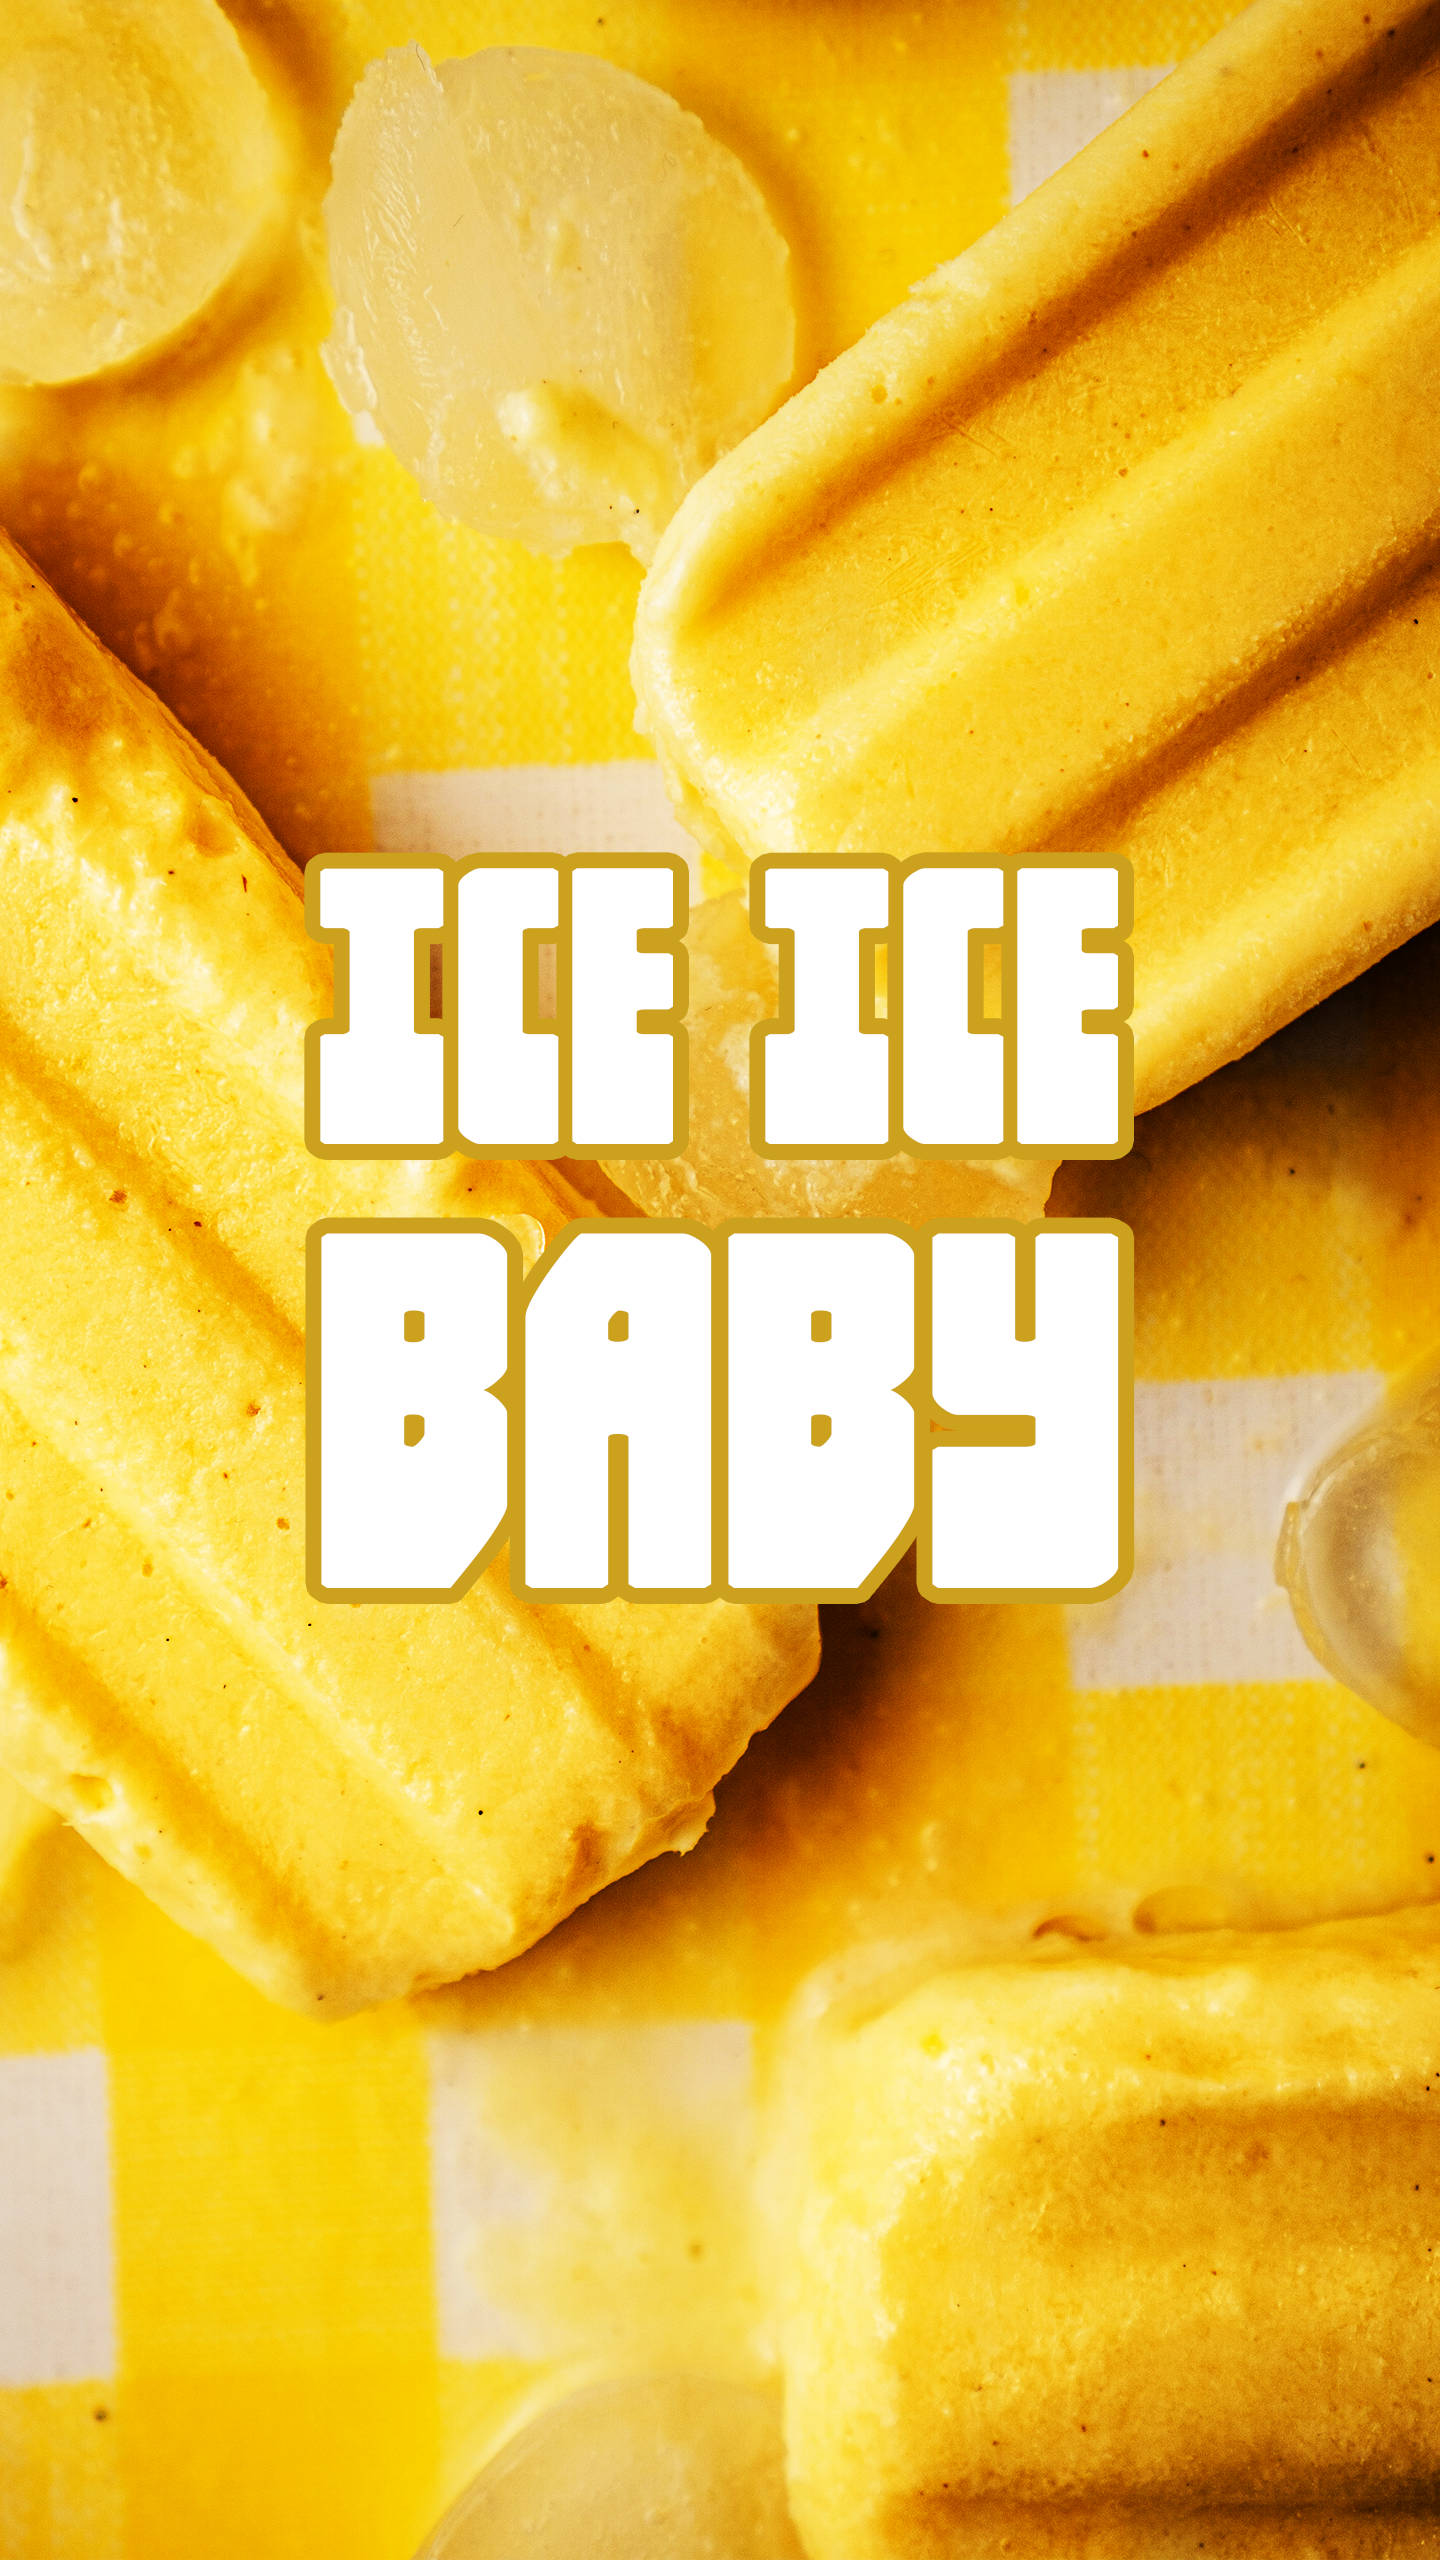 Ice Ice Baby 80s Retro Vintage Wallpaper